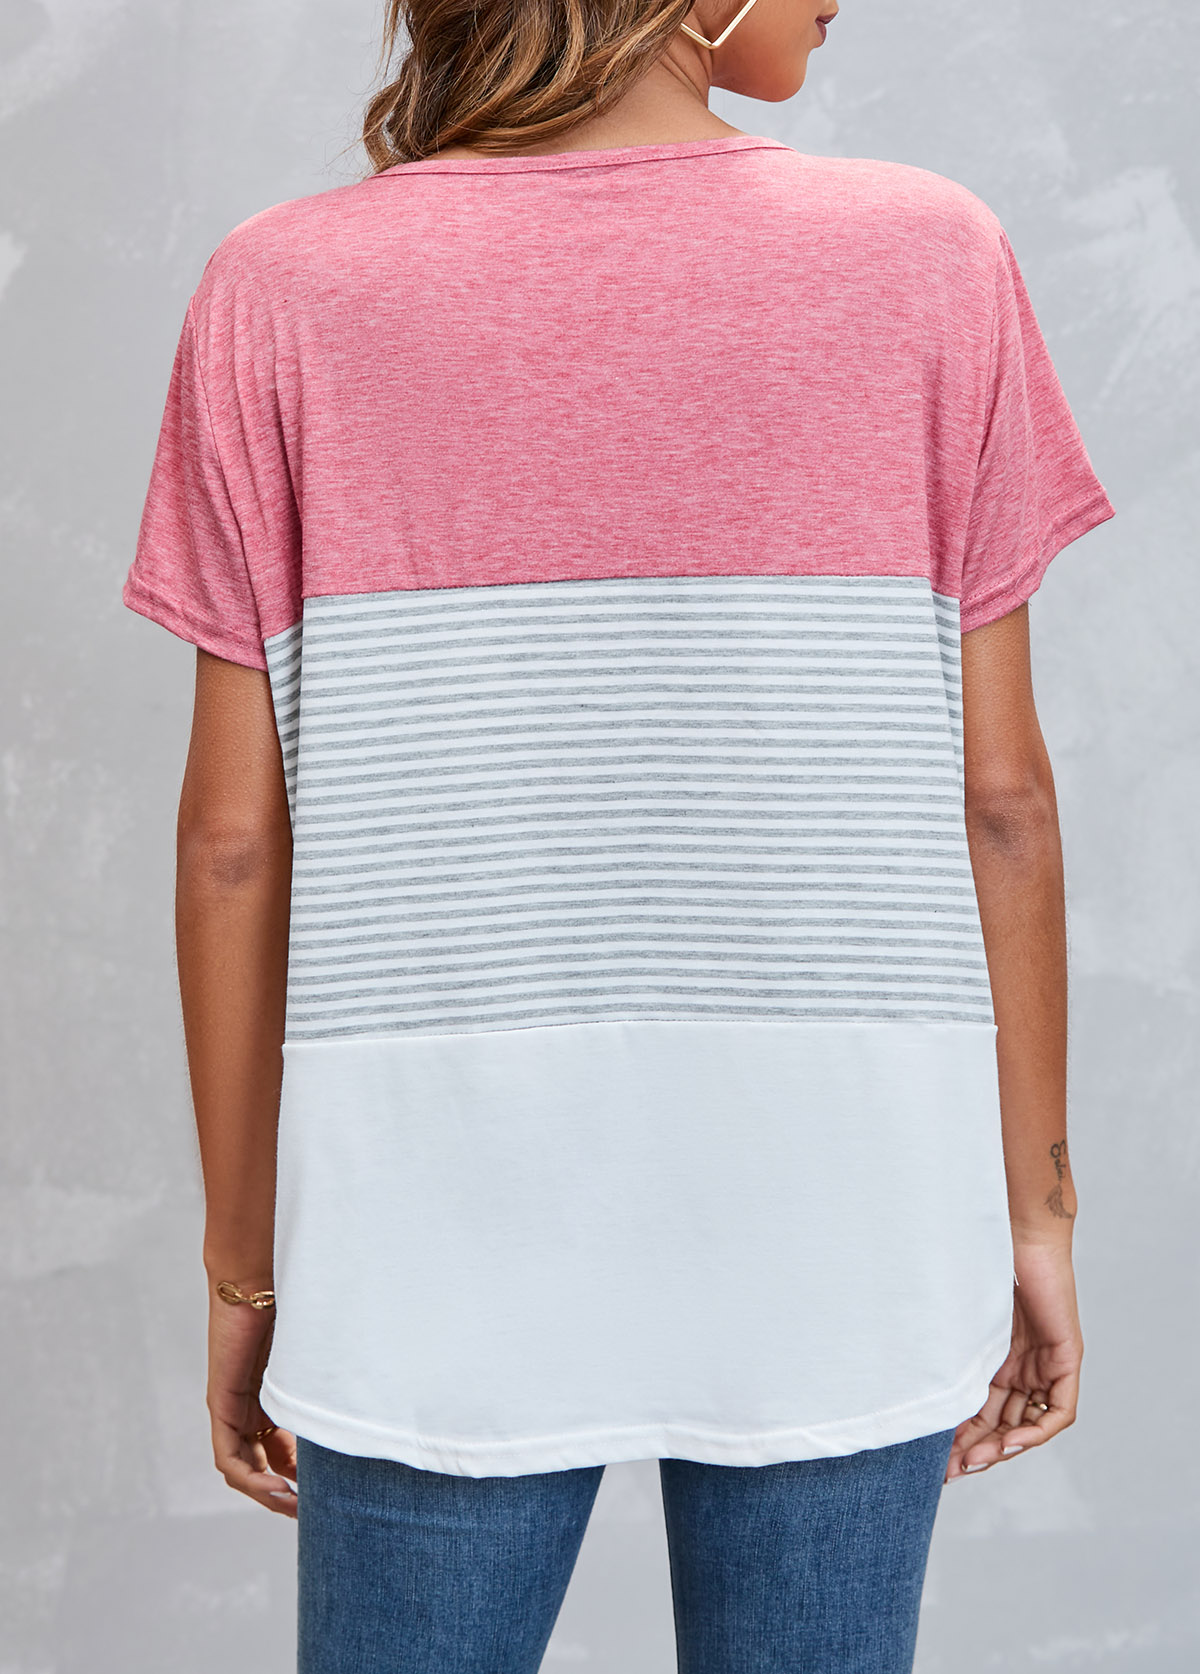 Round Neck Striped Pink T Shirt